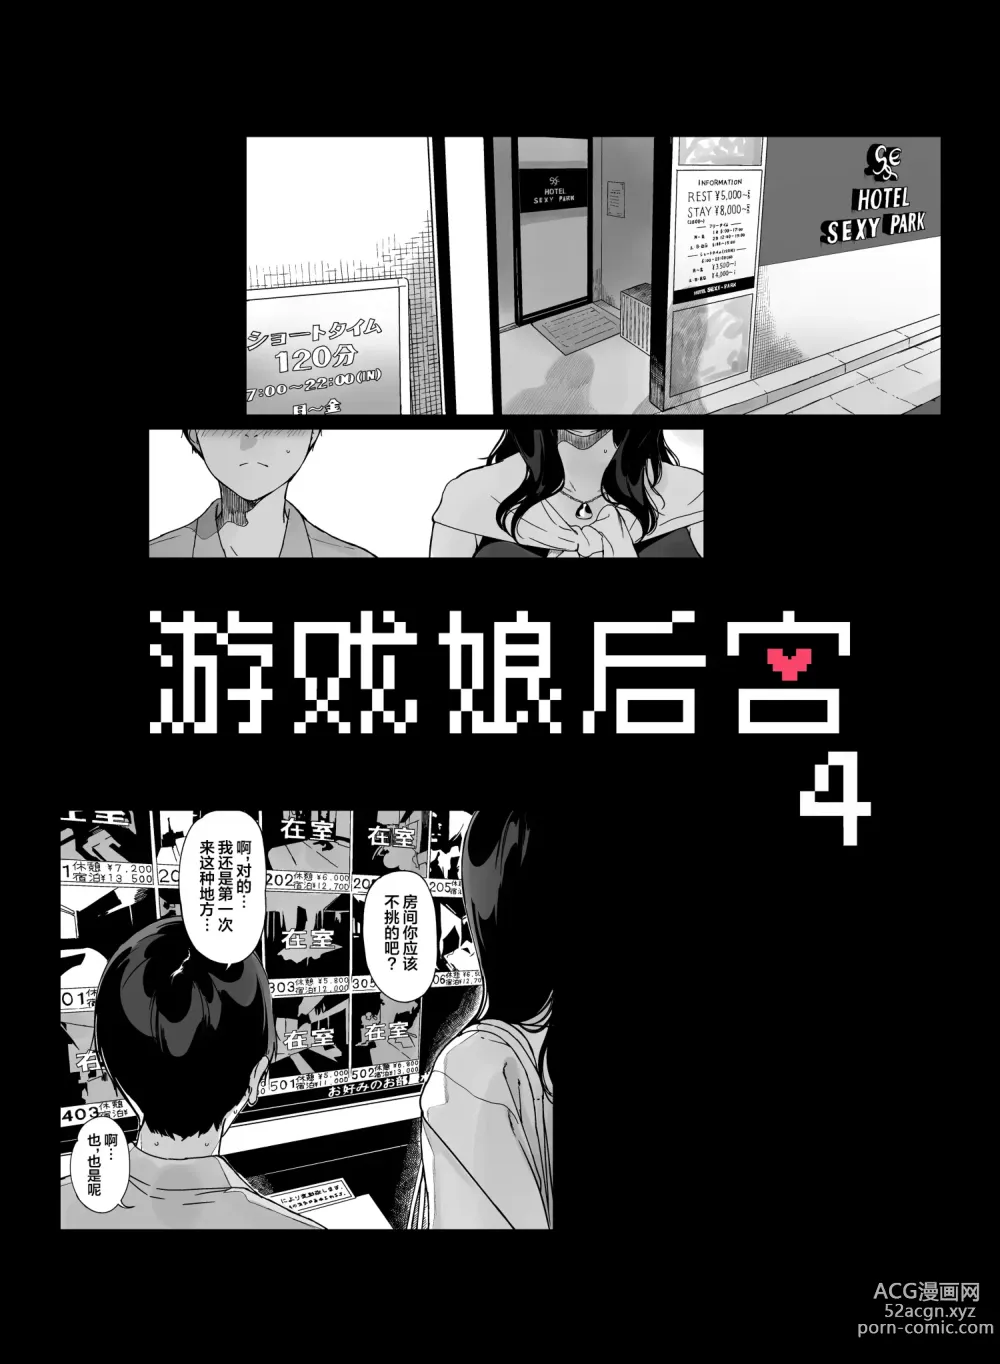 Page 6 of manga げーみんぐはーれむ4